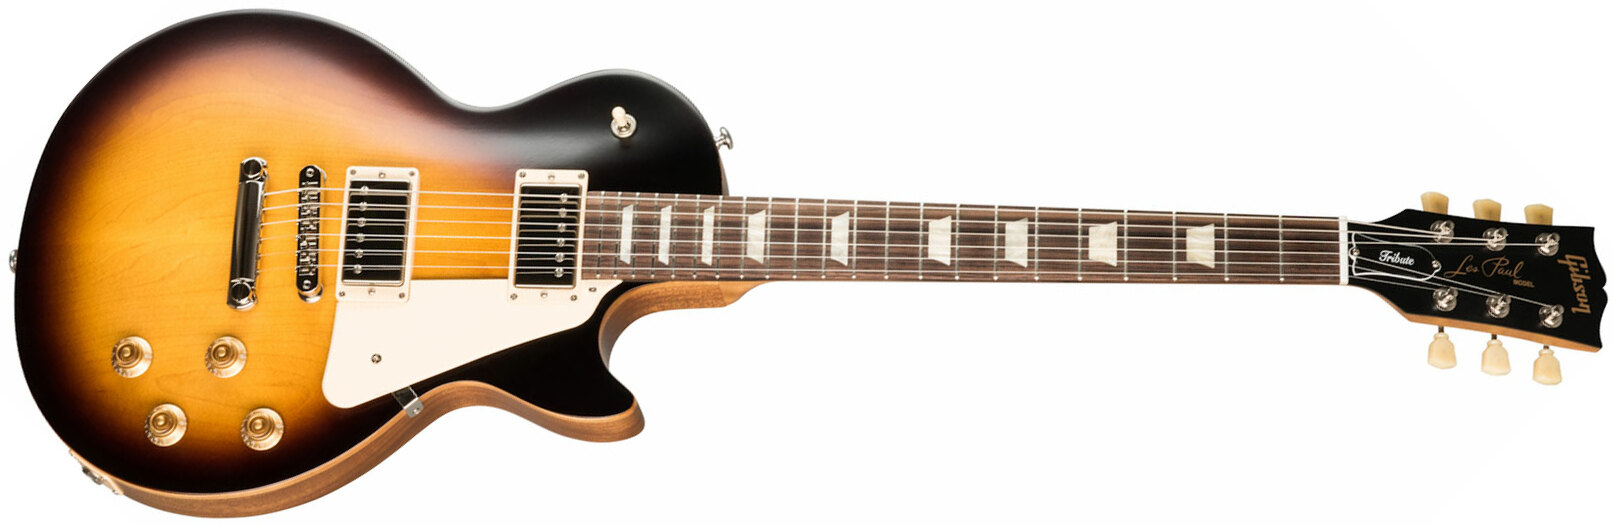 Gibson Les Paul Tribute Modern 2h Ht Rw - Satin Tobacco Burst - Guitarra eléctrica de corte único. - Main picture